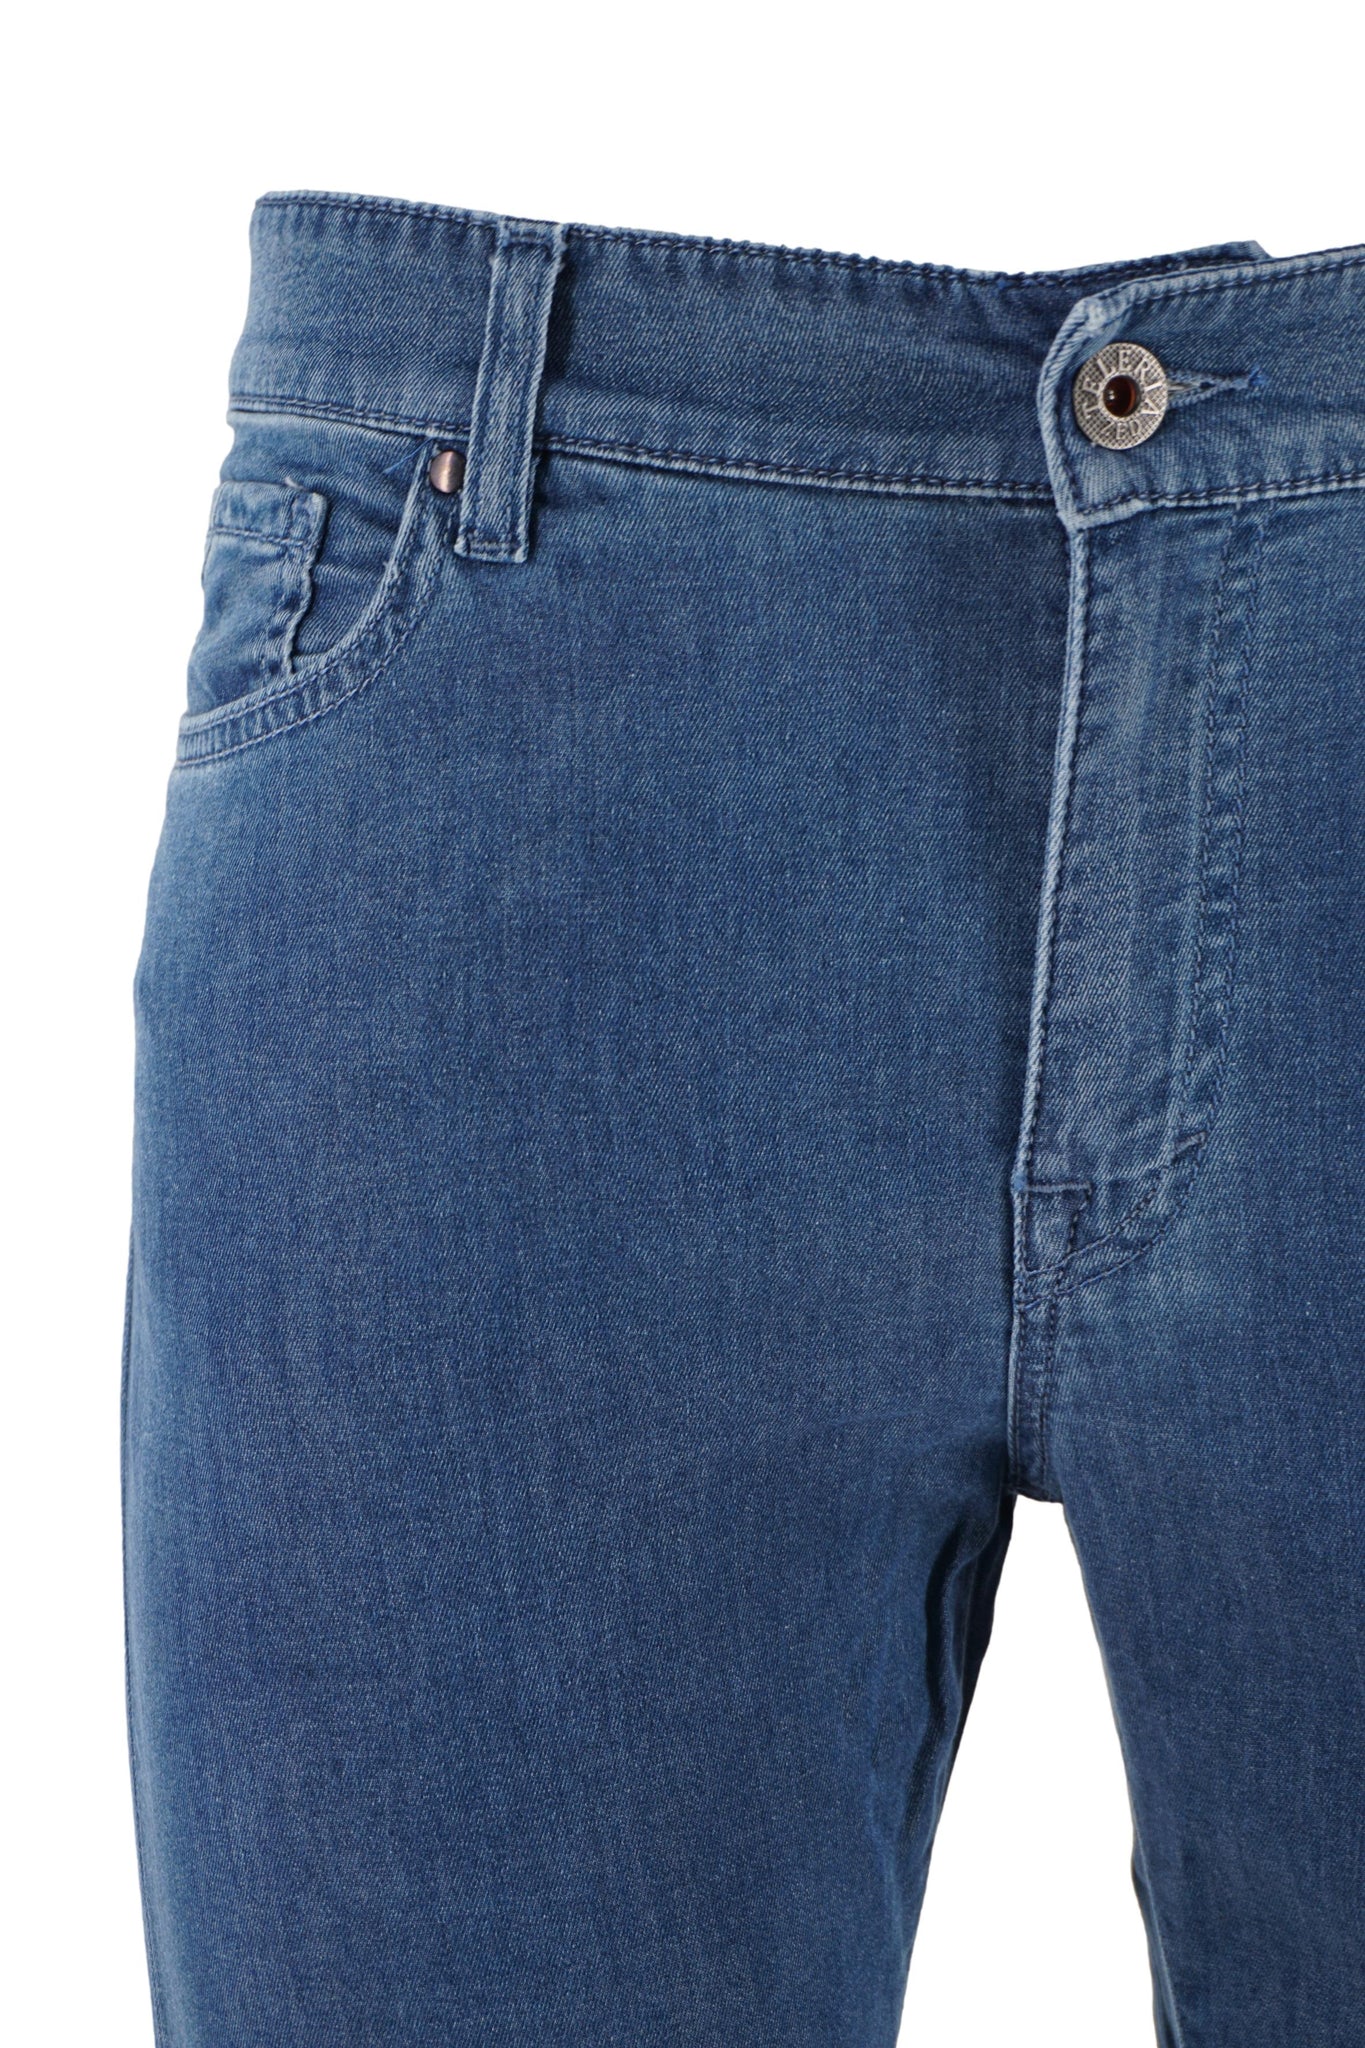 Jeans Leggero Lavaggio Medio / Jeans - Ideal Moda